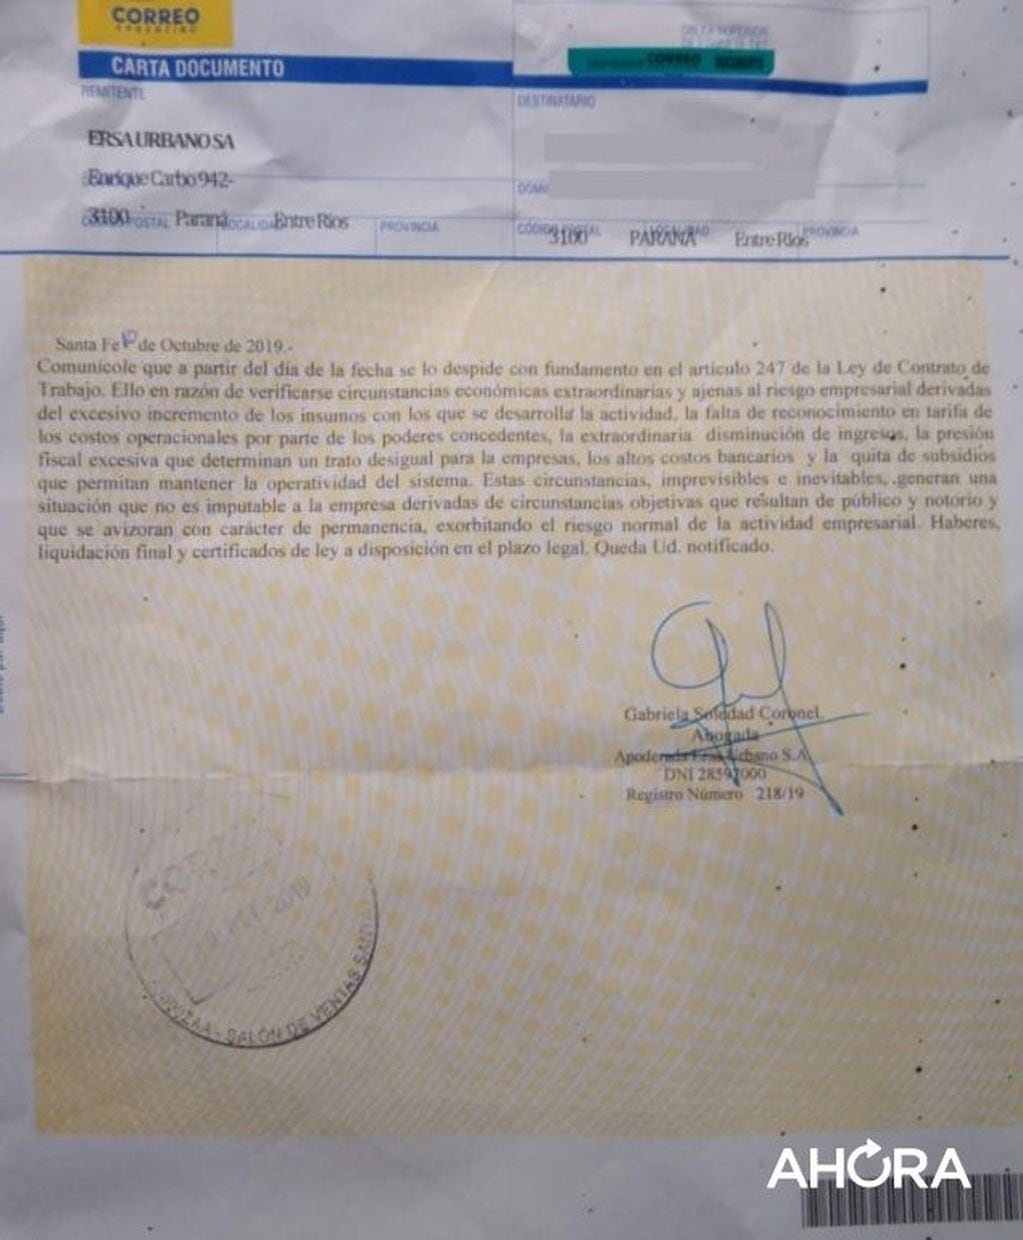 Carta Documento de despido. Gentileza: Ahora noticias de Paraná.